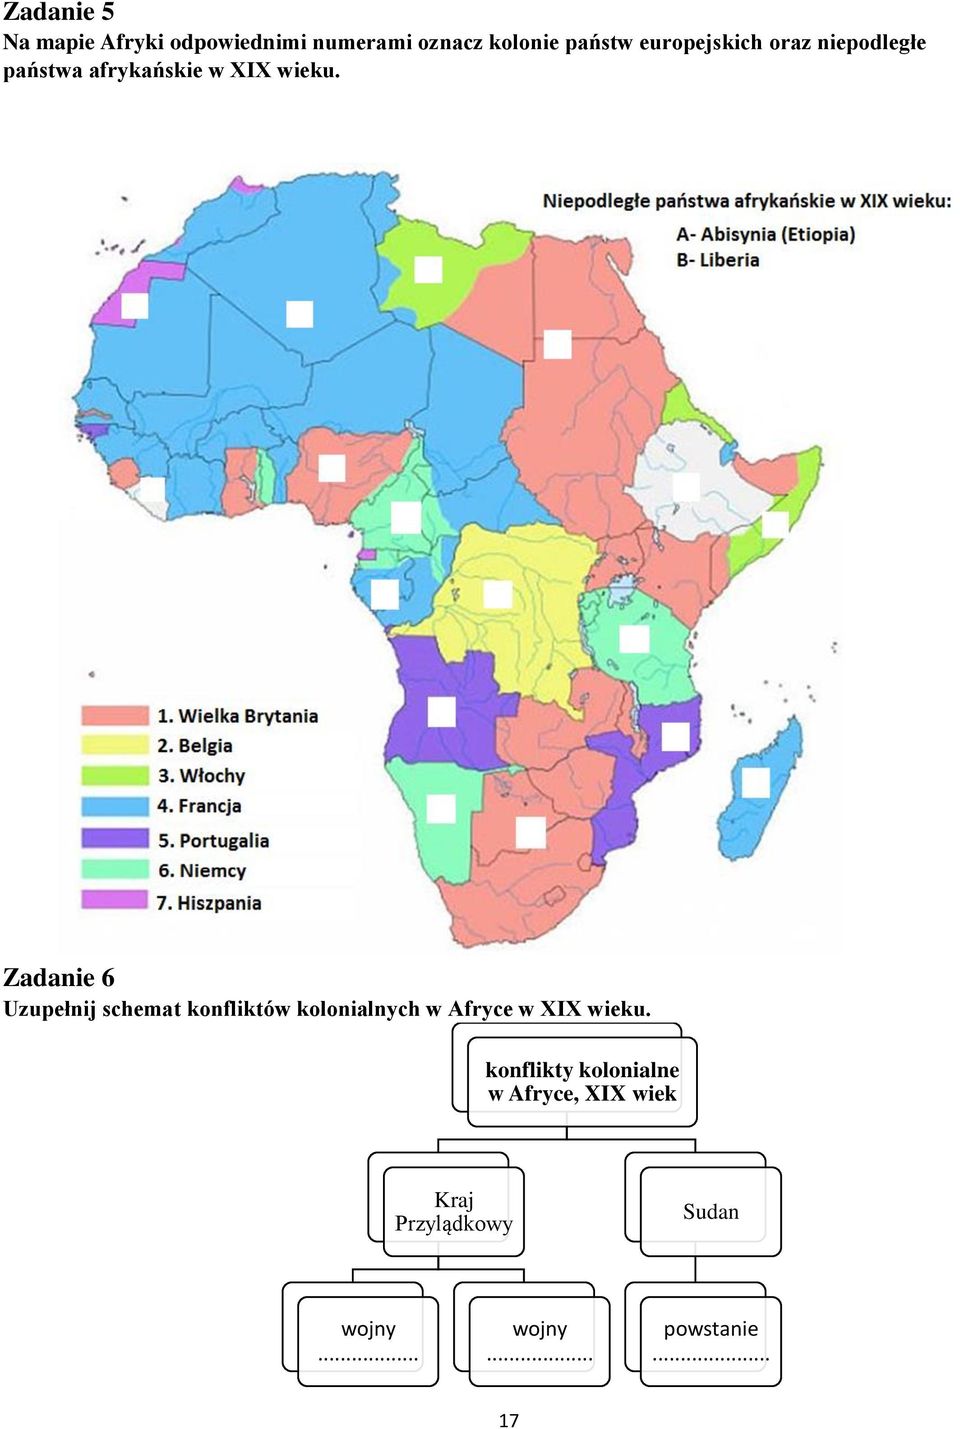 Zadanie 6 Uzupełnij schemat konfliktów kolonialnych w Afryce w XIX wieku.